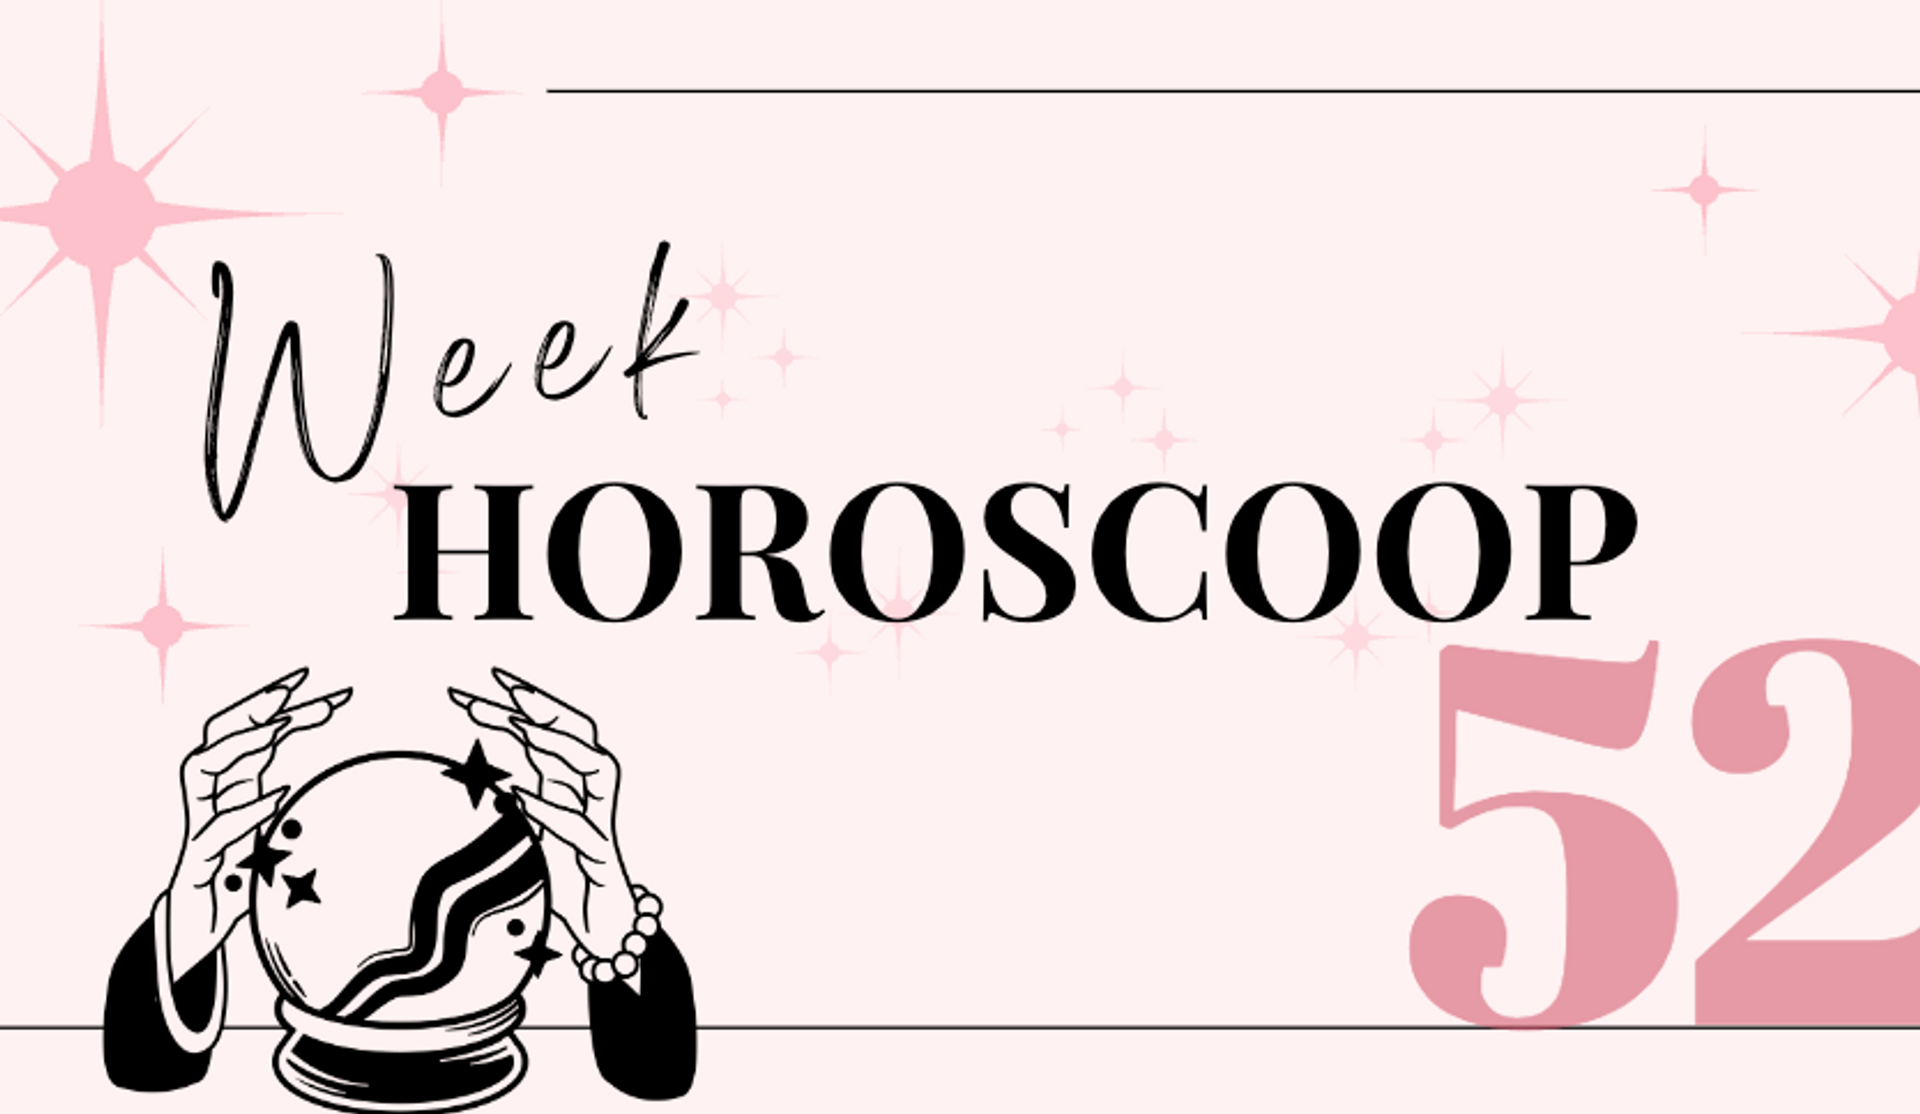 weekhoroscoop-week-52